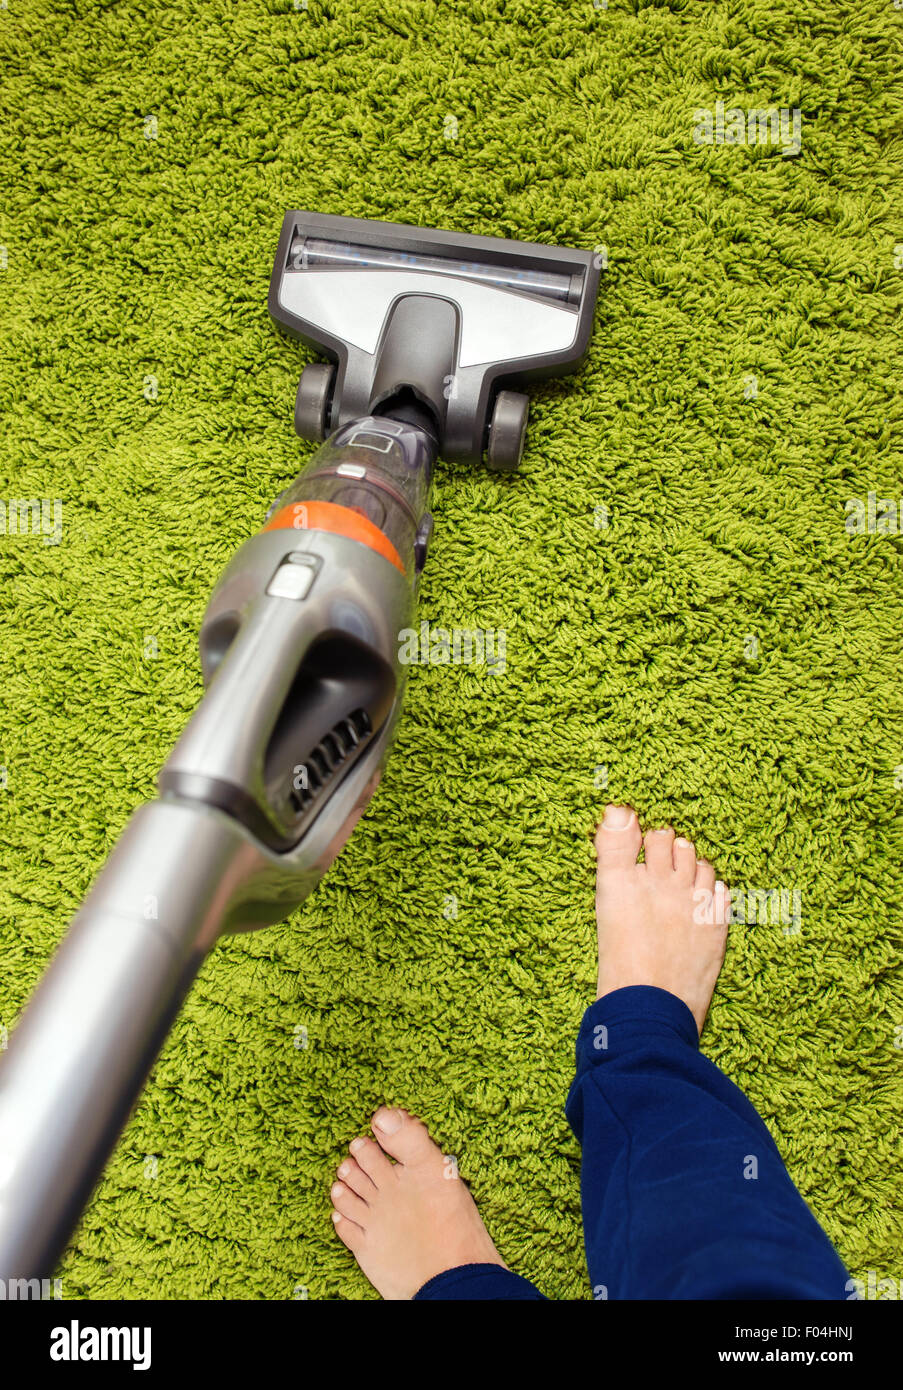 Staubsauger in Aktion - ein Männer sauberer Teppich Stockfoto